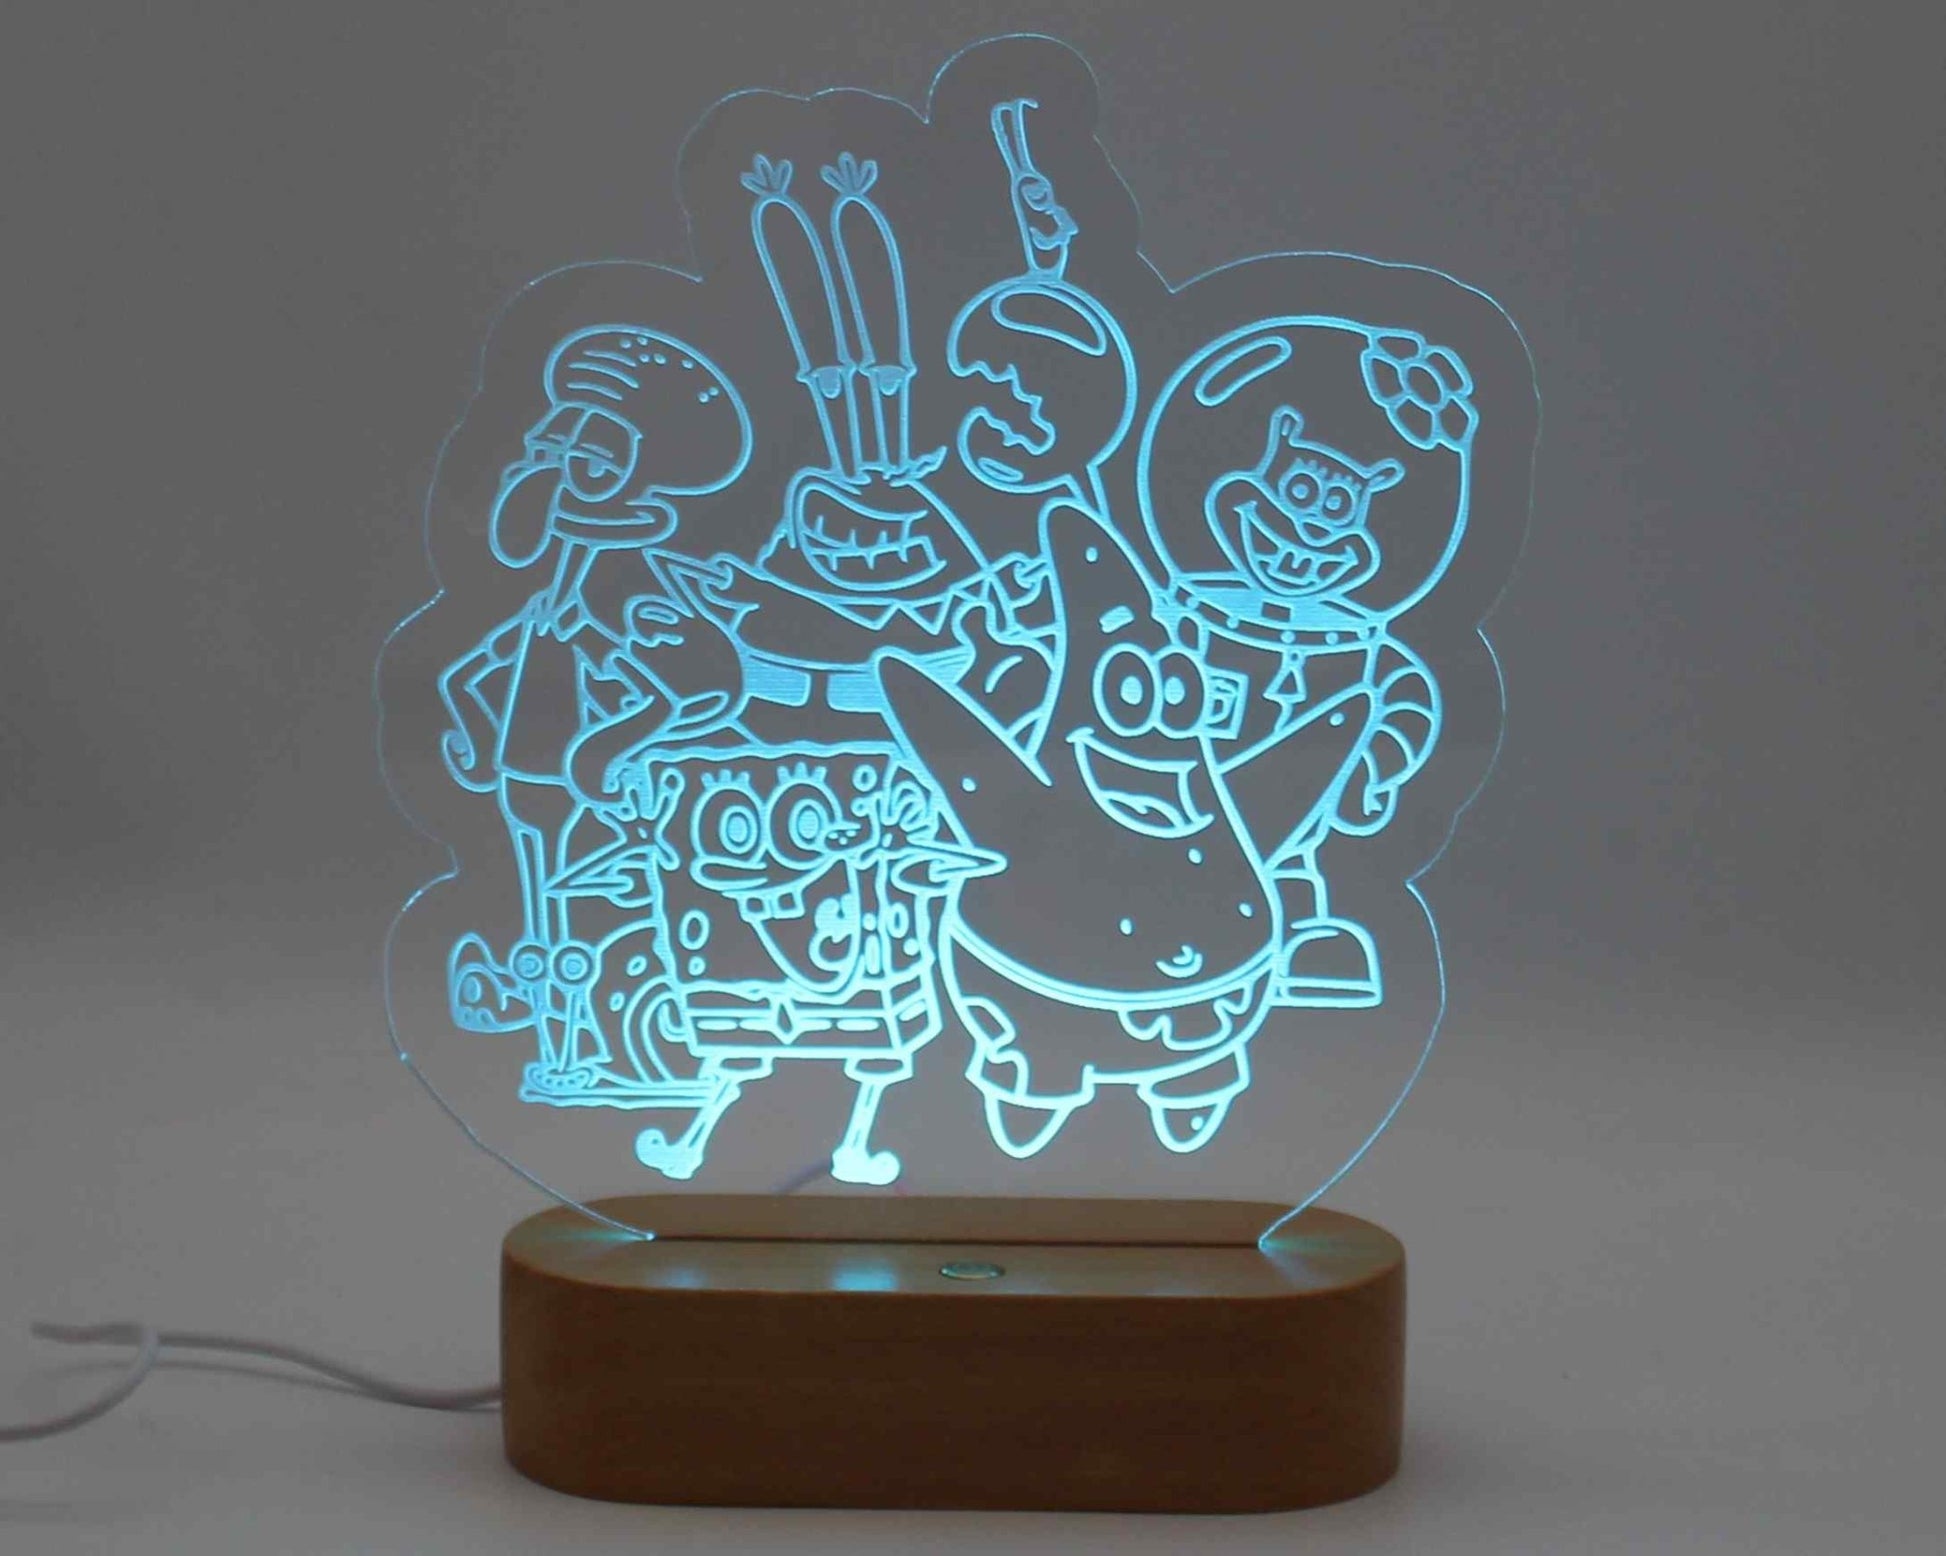 Sponge Bob Night Light - Haisley Design